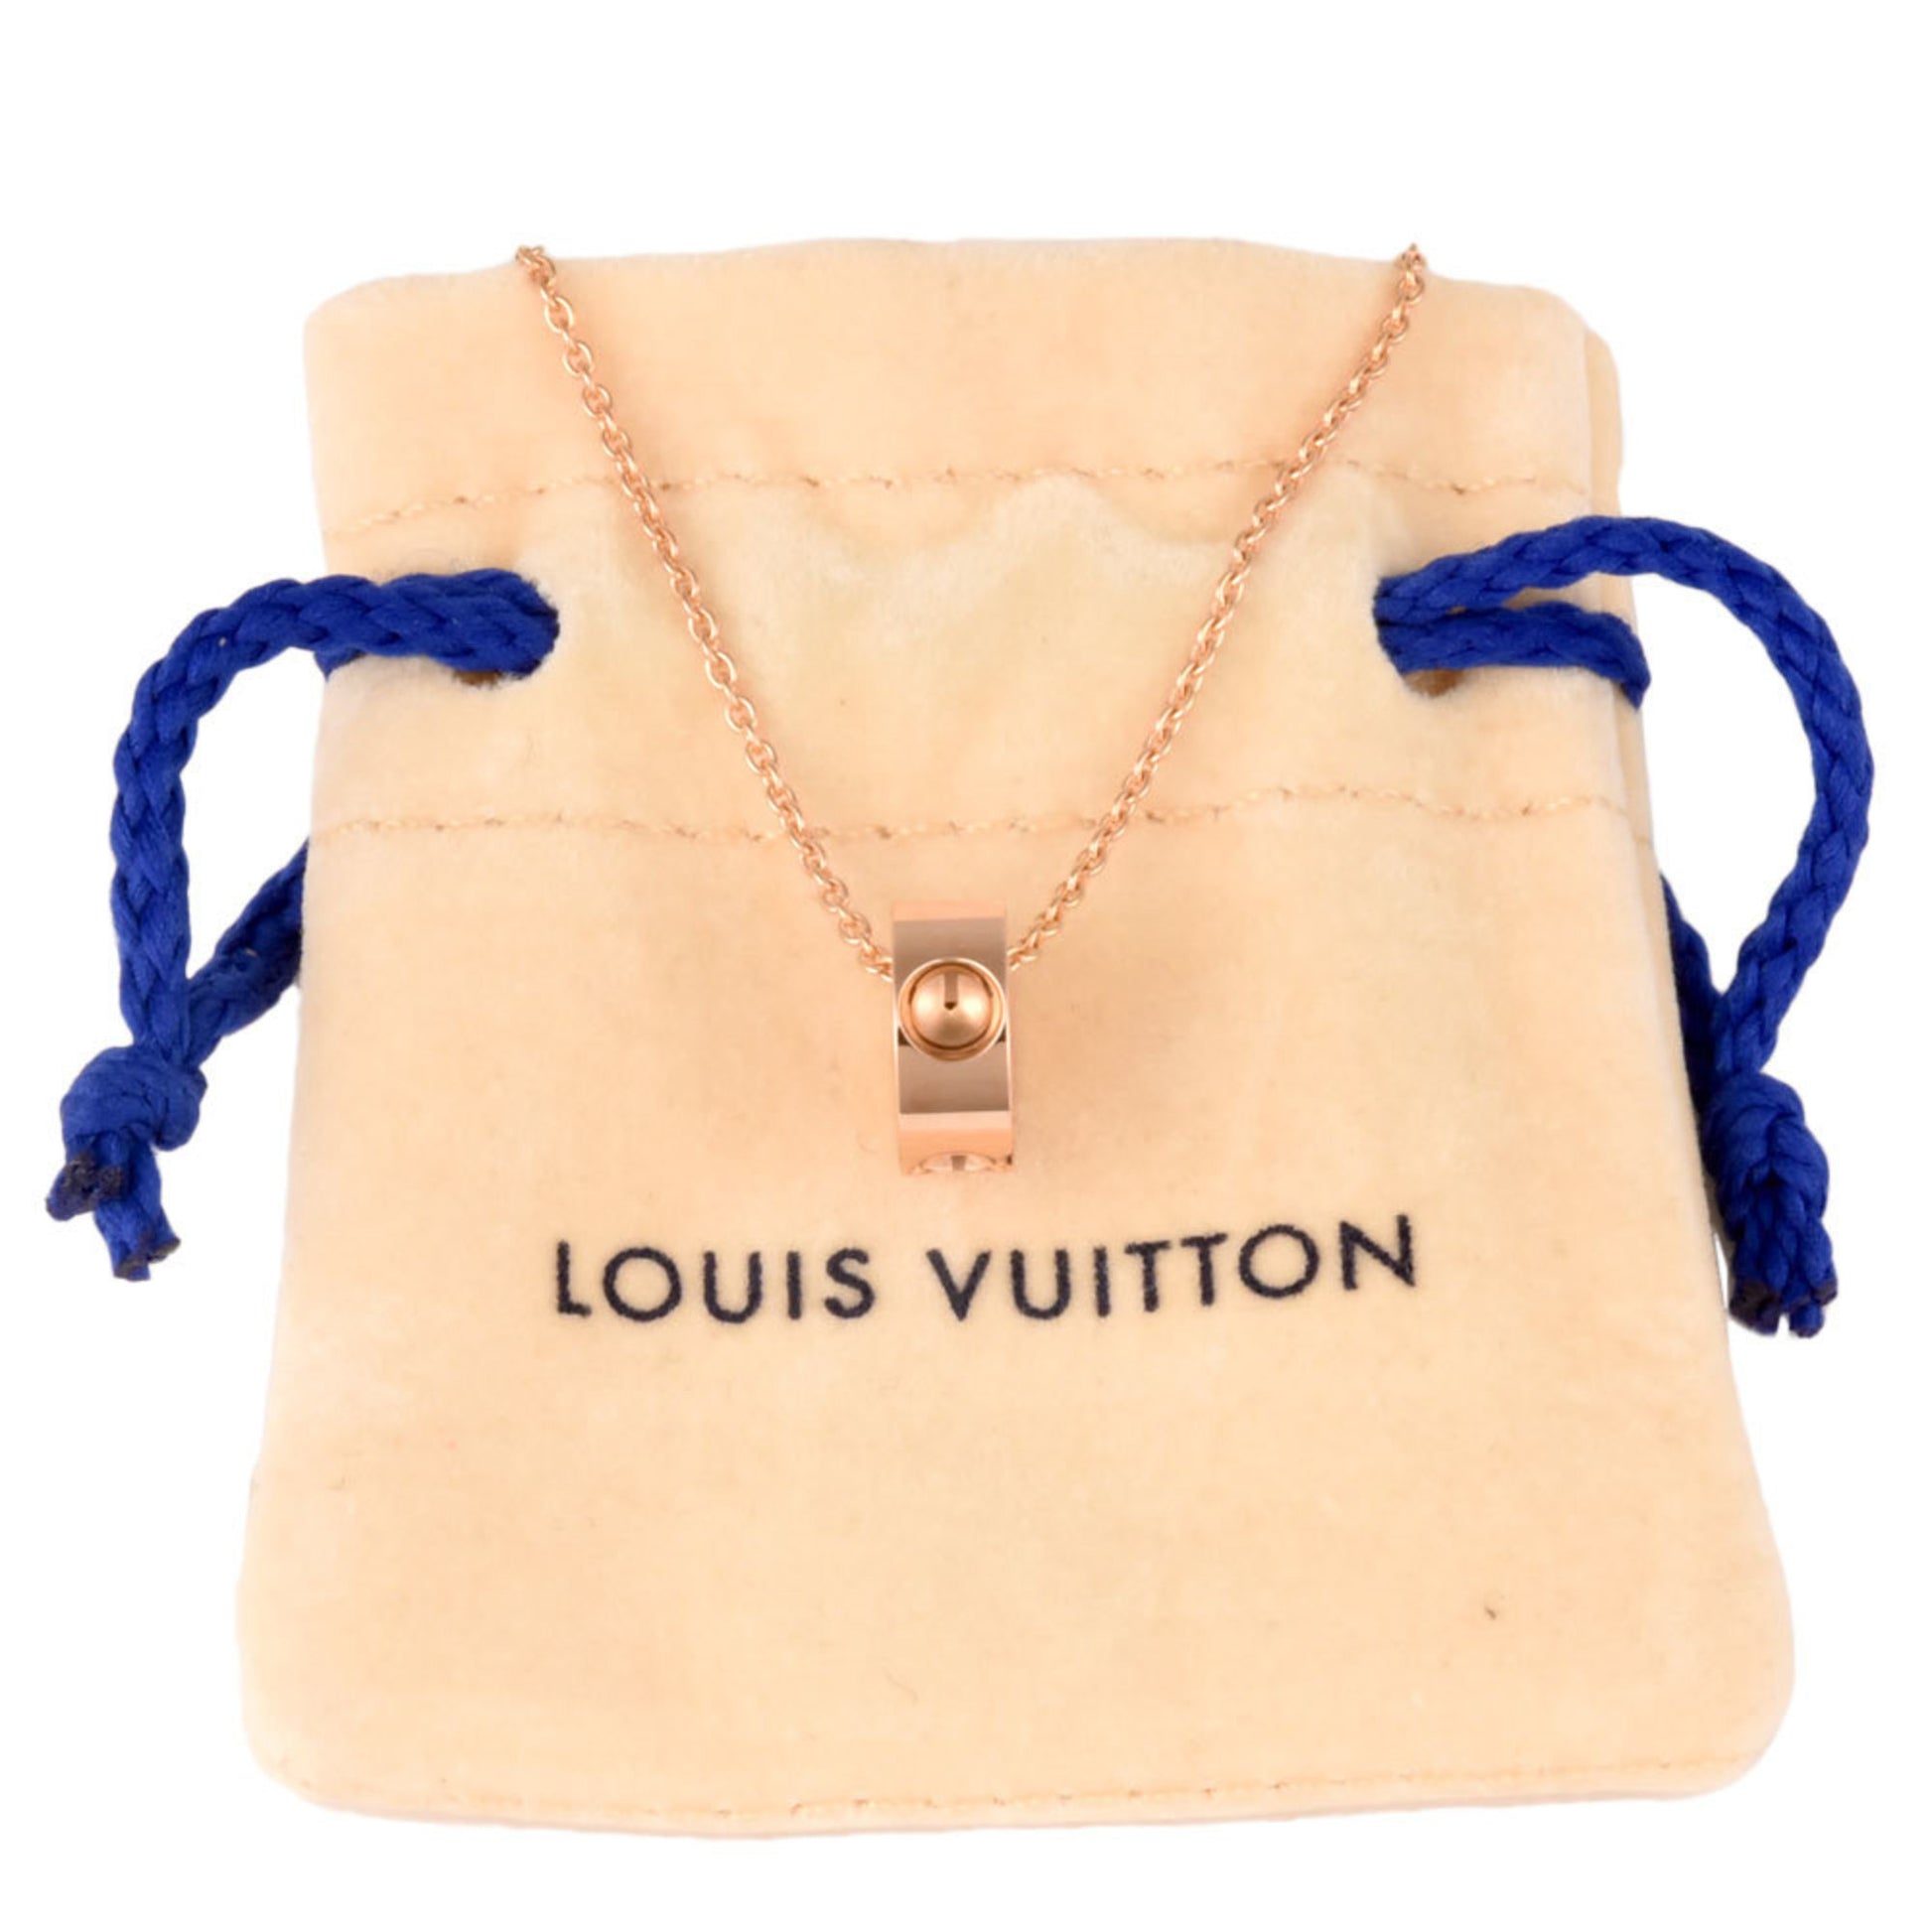 Louis Vuitton Silver Lockit Pendant, Sterling Silver Silver. Size SA